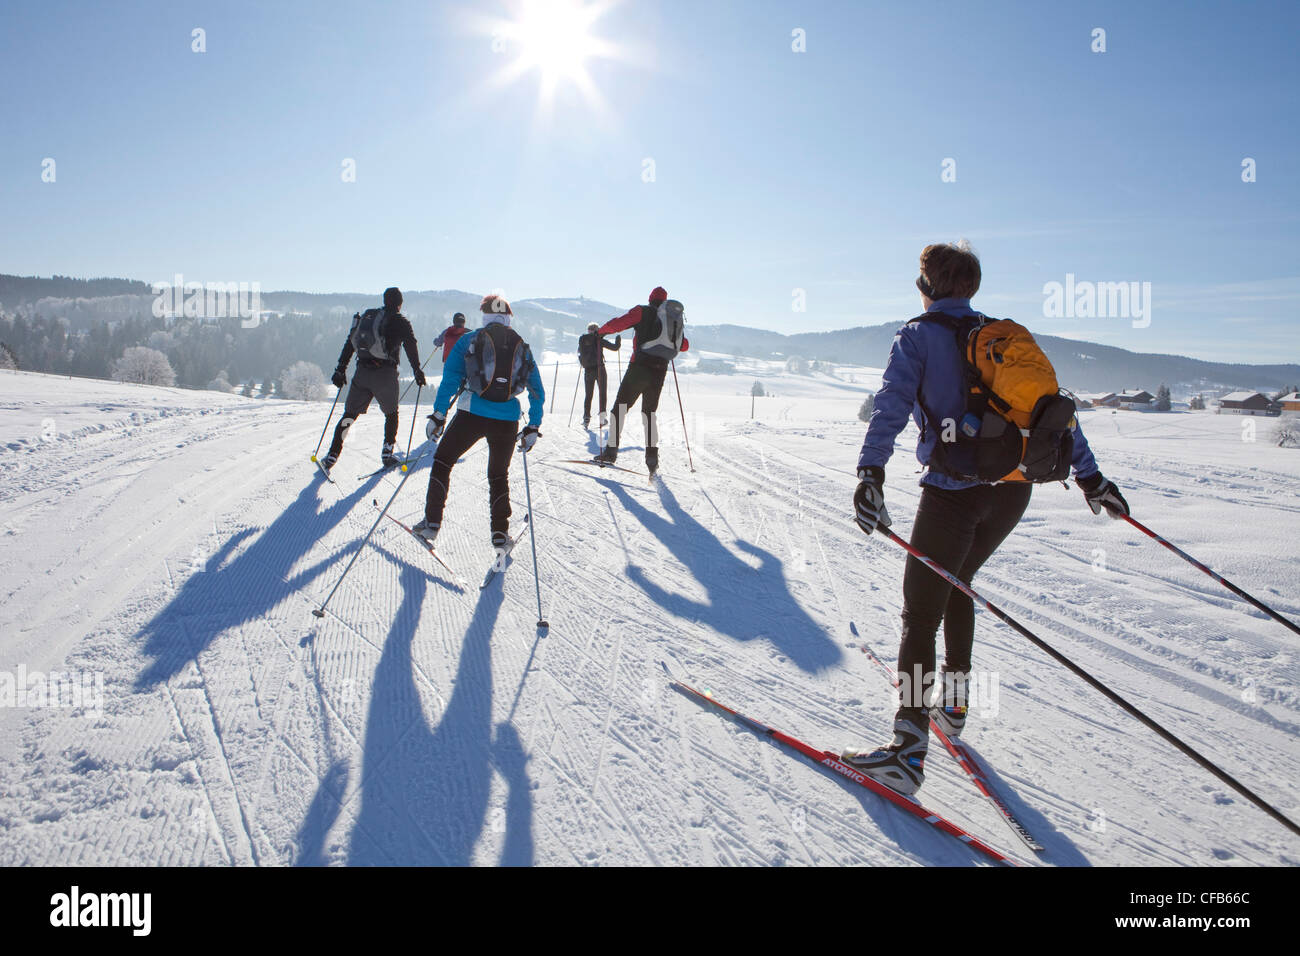 Le ski de fond, ski, tourisme, vacances, hiver, neige, sports d'hiver, France, neige, groupe, soleil, sport, GTJ, grande traversé Banque D'Images